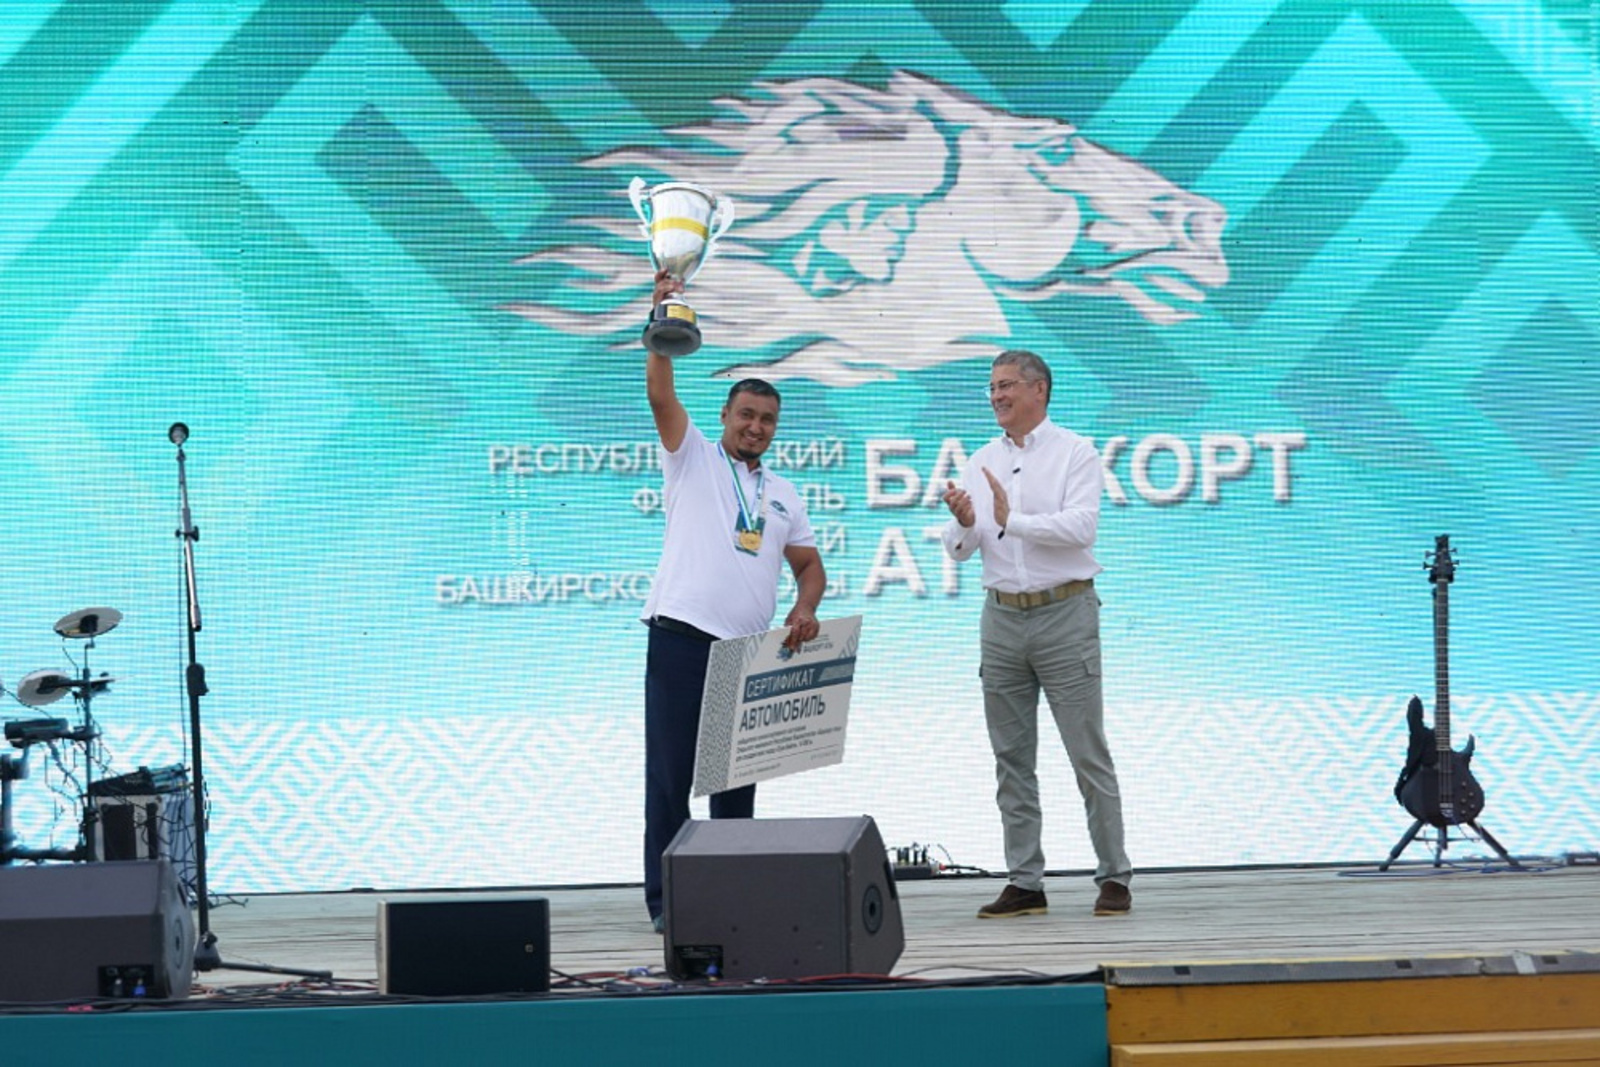 Названо имя победителя главных состязаний фестиваля «Башкорт аты», который получил сертификат на автомобиль